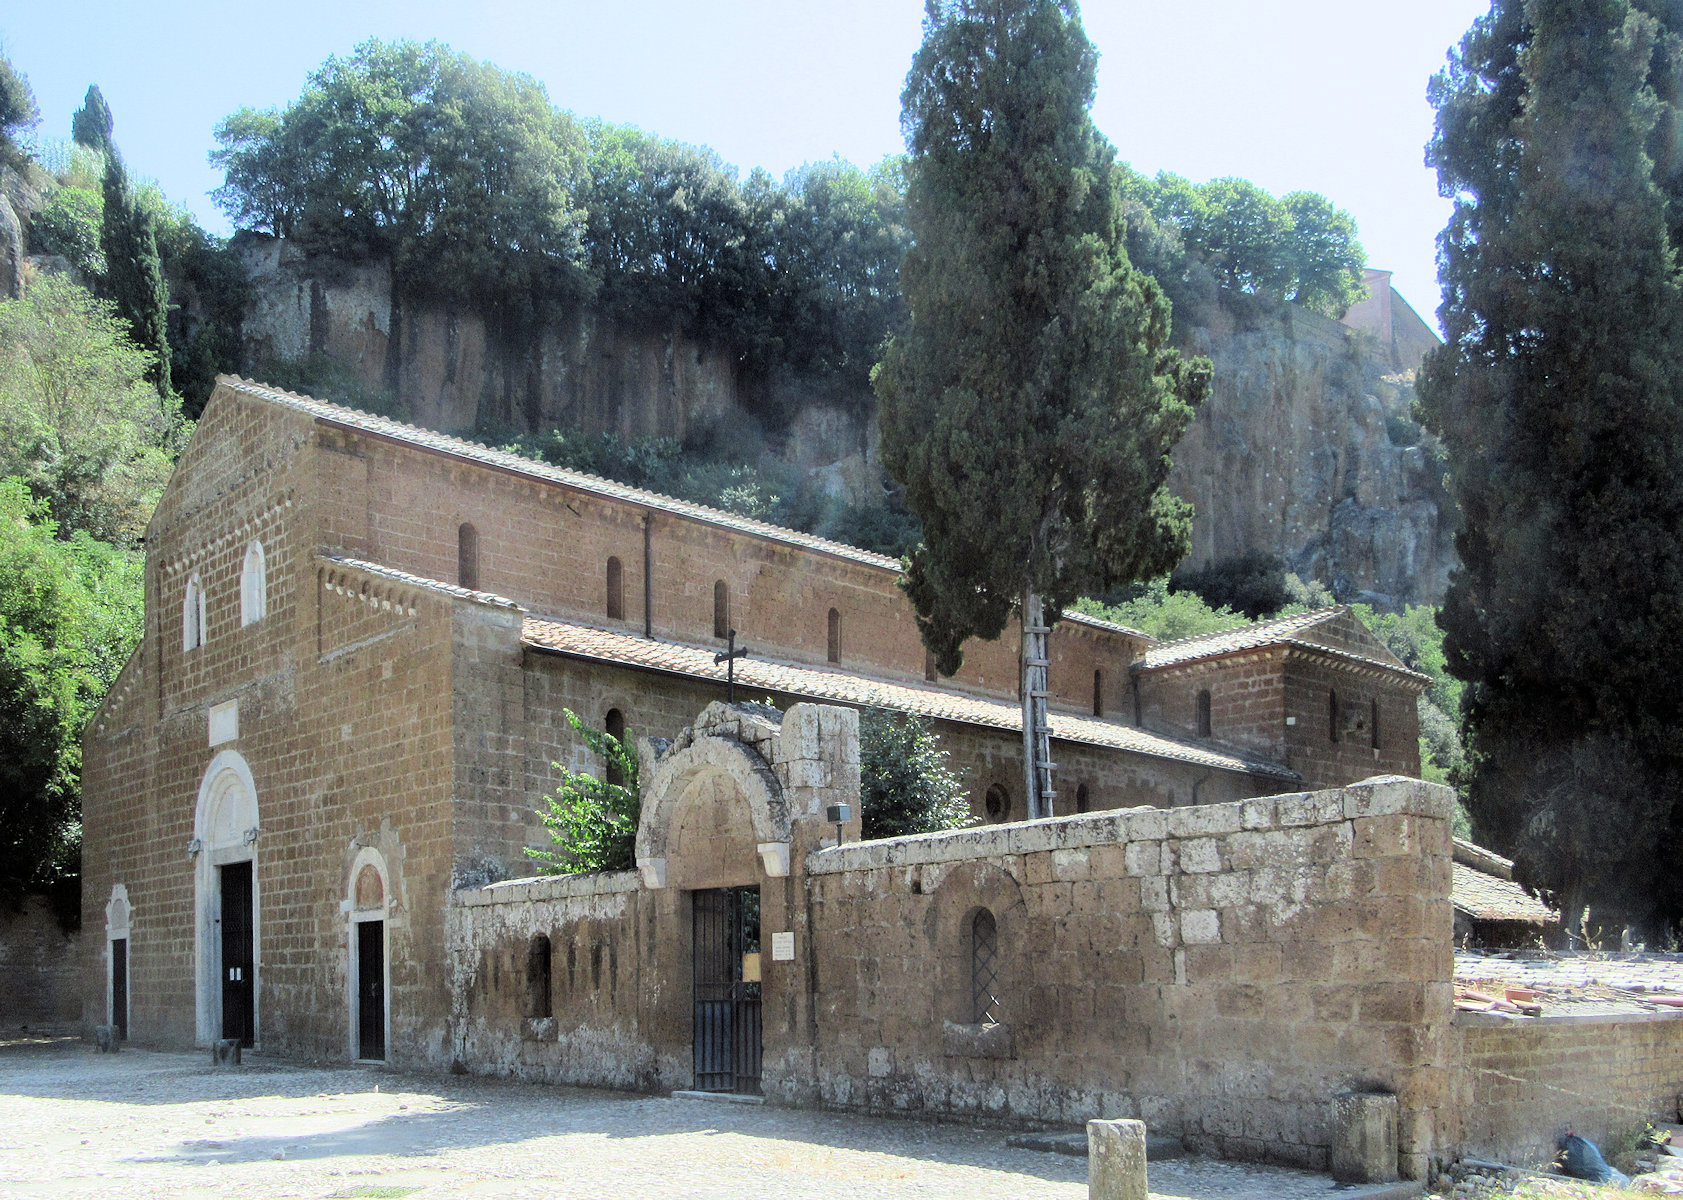 Kirche Sant'Elia unterhalb von Castel Sant'Elia